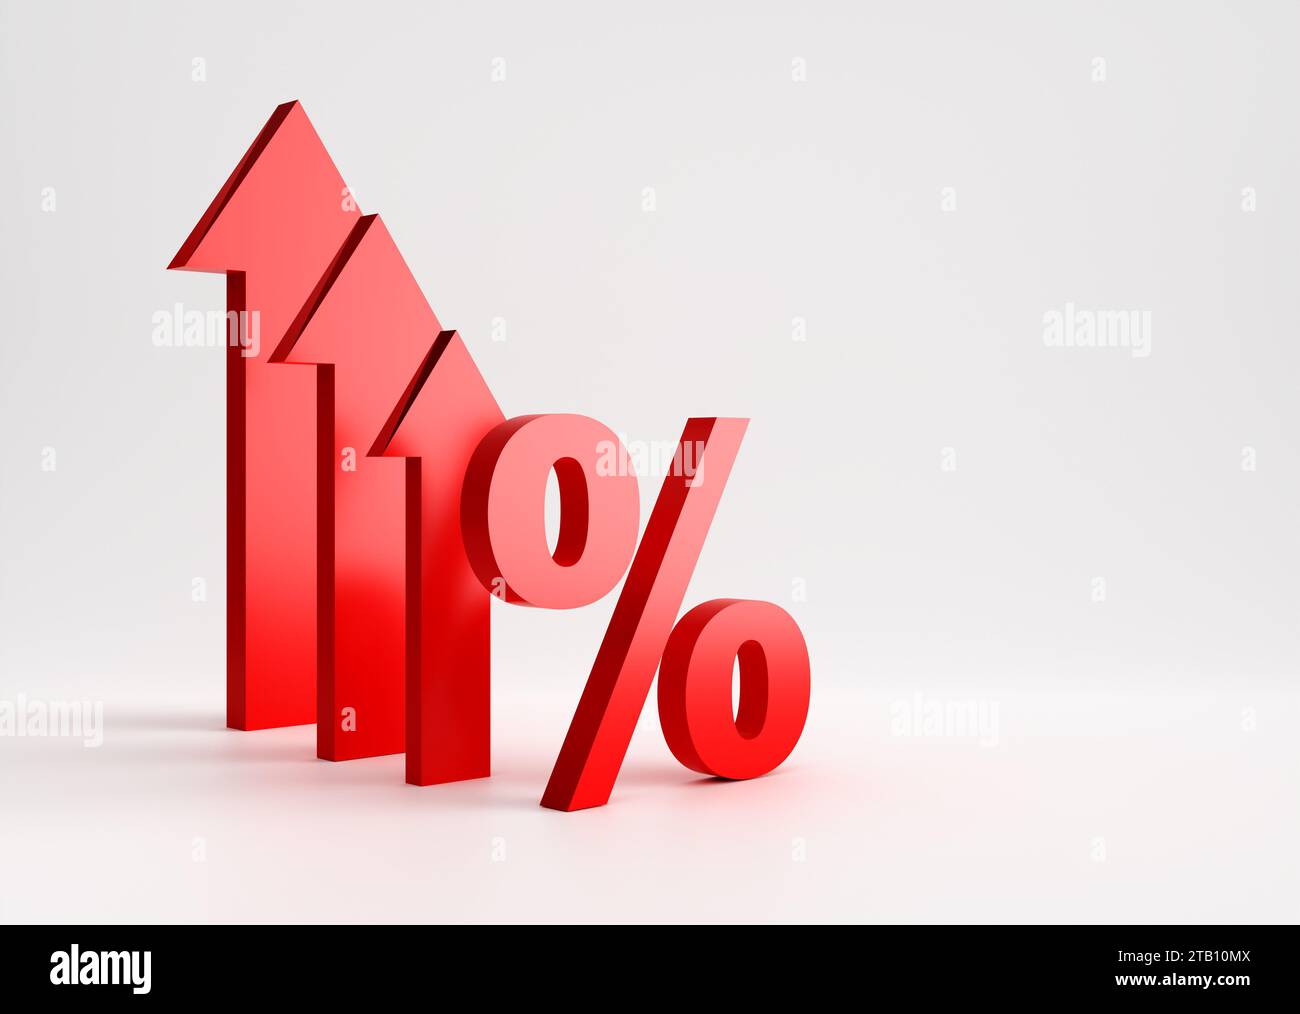 Simbolo di percentuale con frecce verso l'alto su sfondo bianco. Aumento dei costi o dei tassi di interesse. Aumento dei profitti. Rendering 3D. Foto Stock